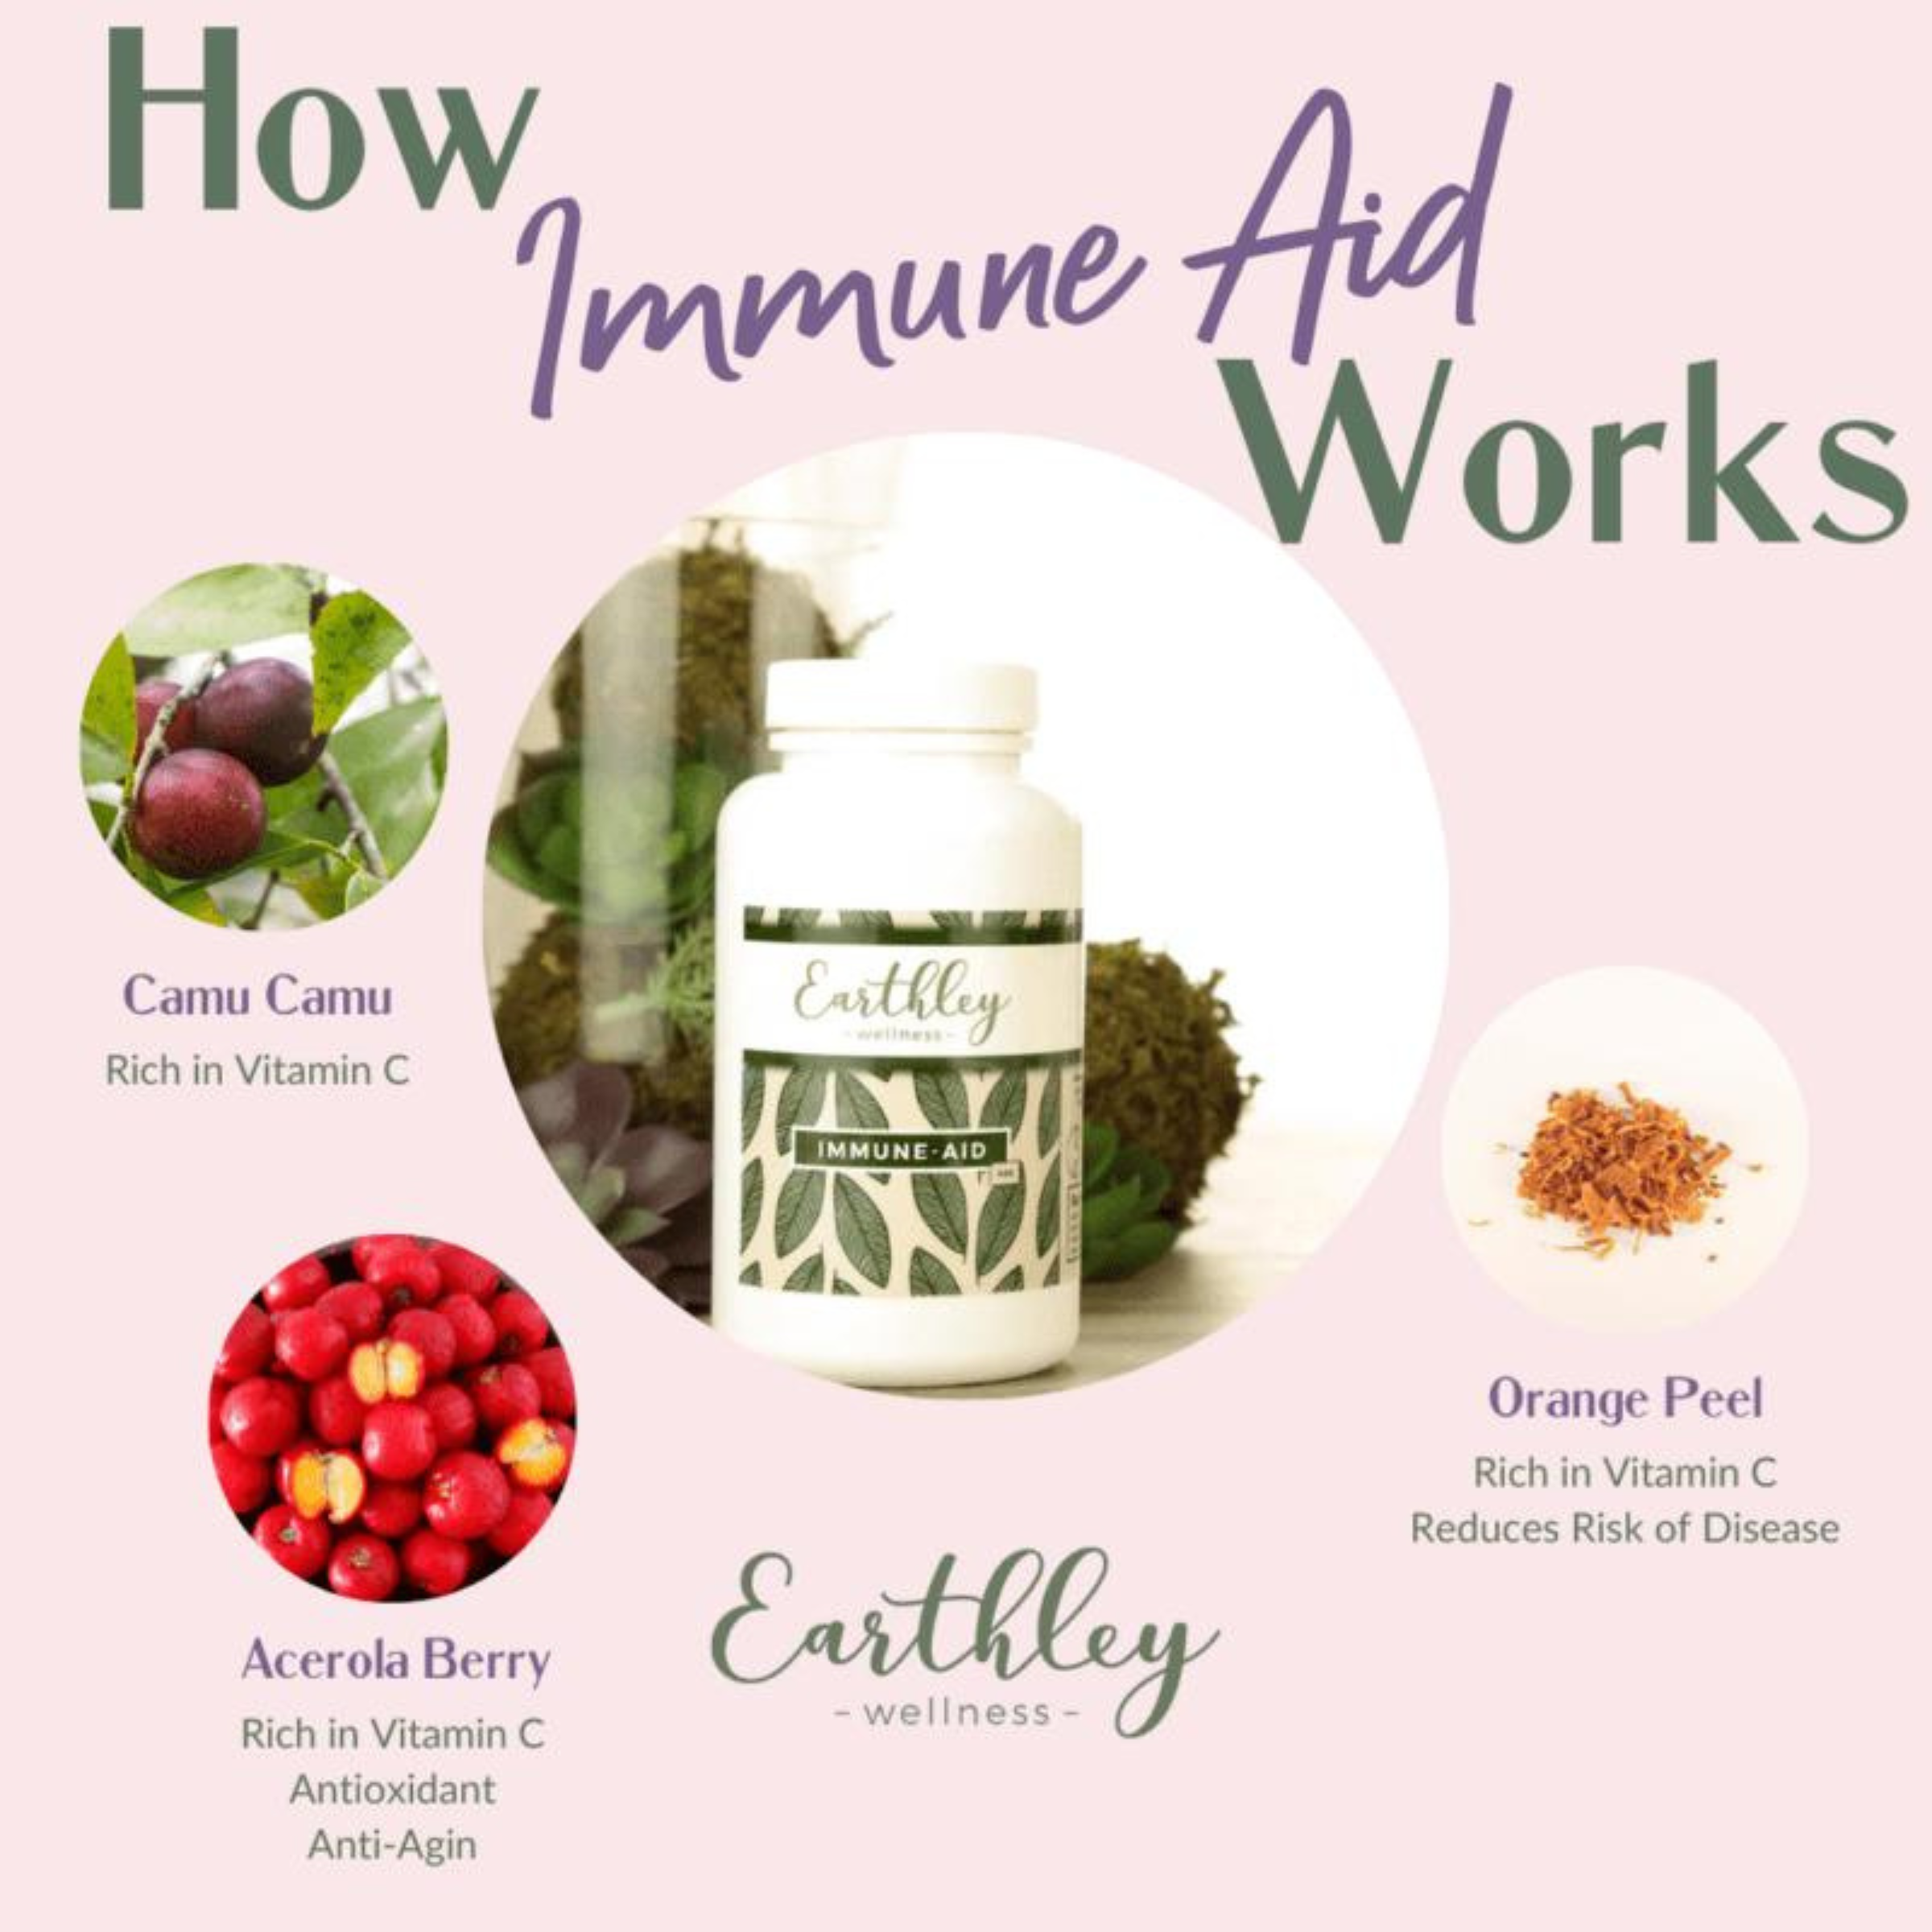 Immune-Aid Vitamin C Powder